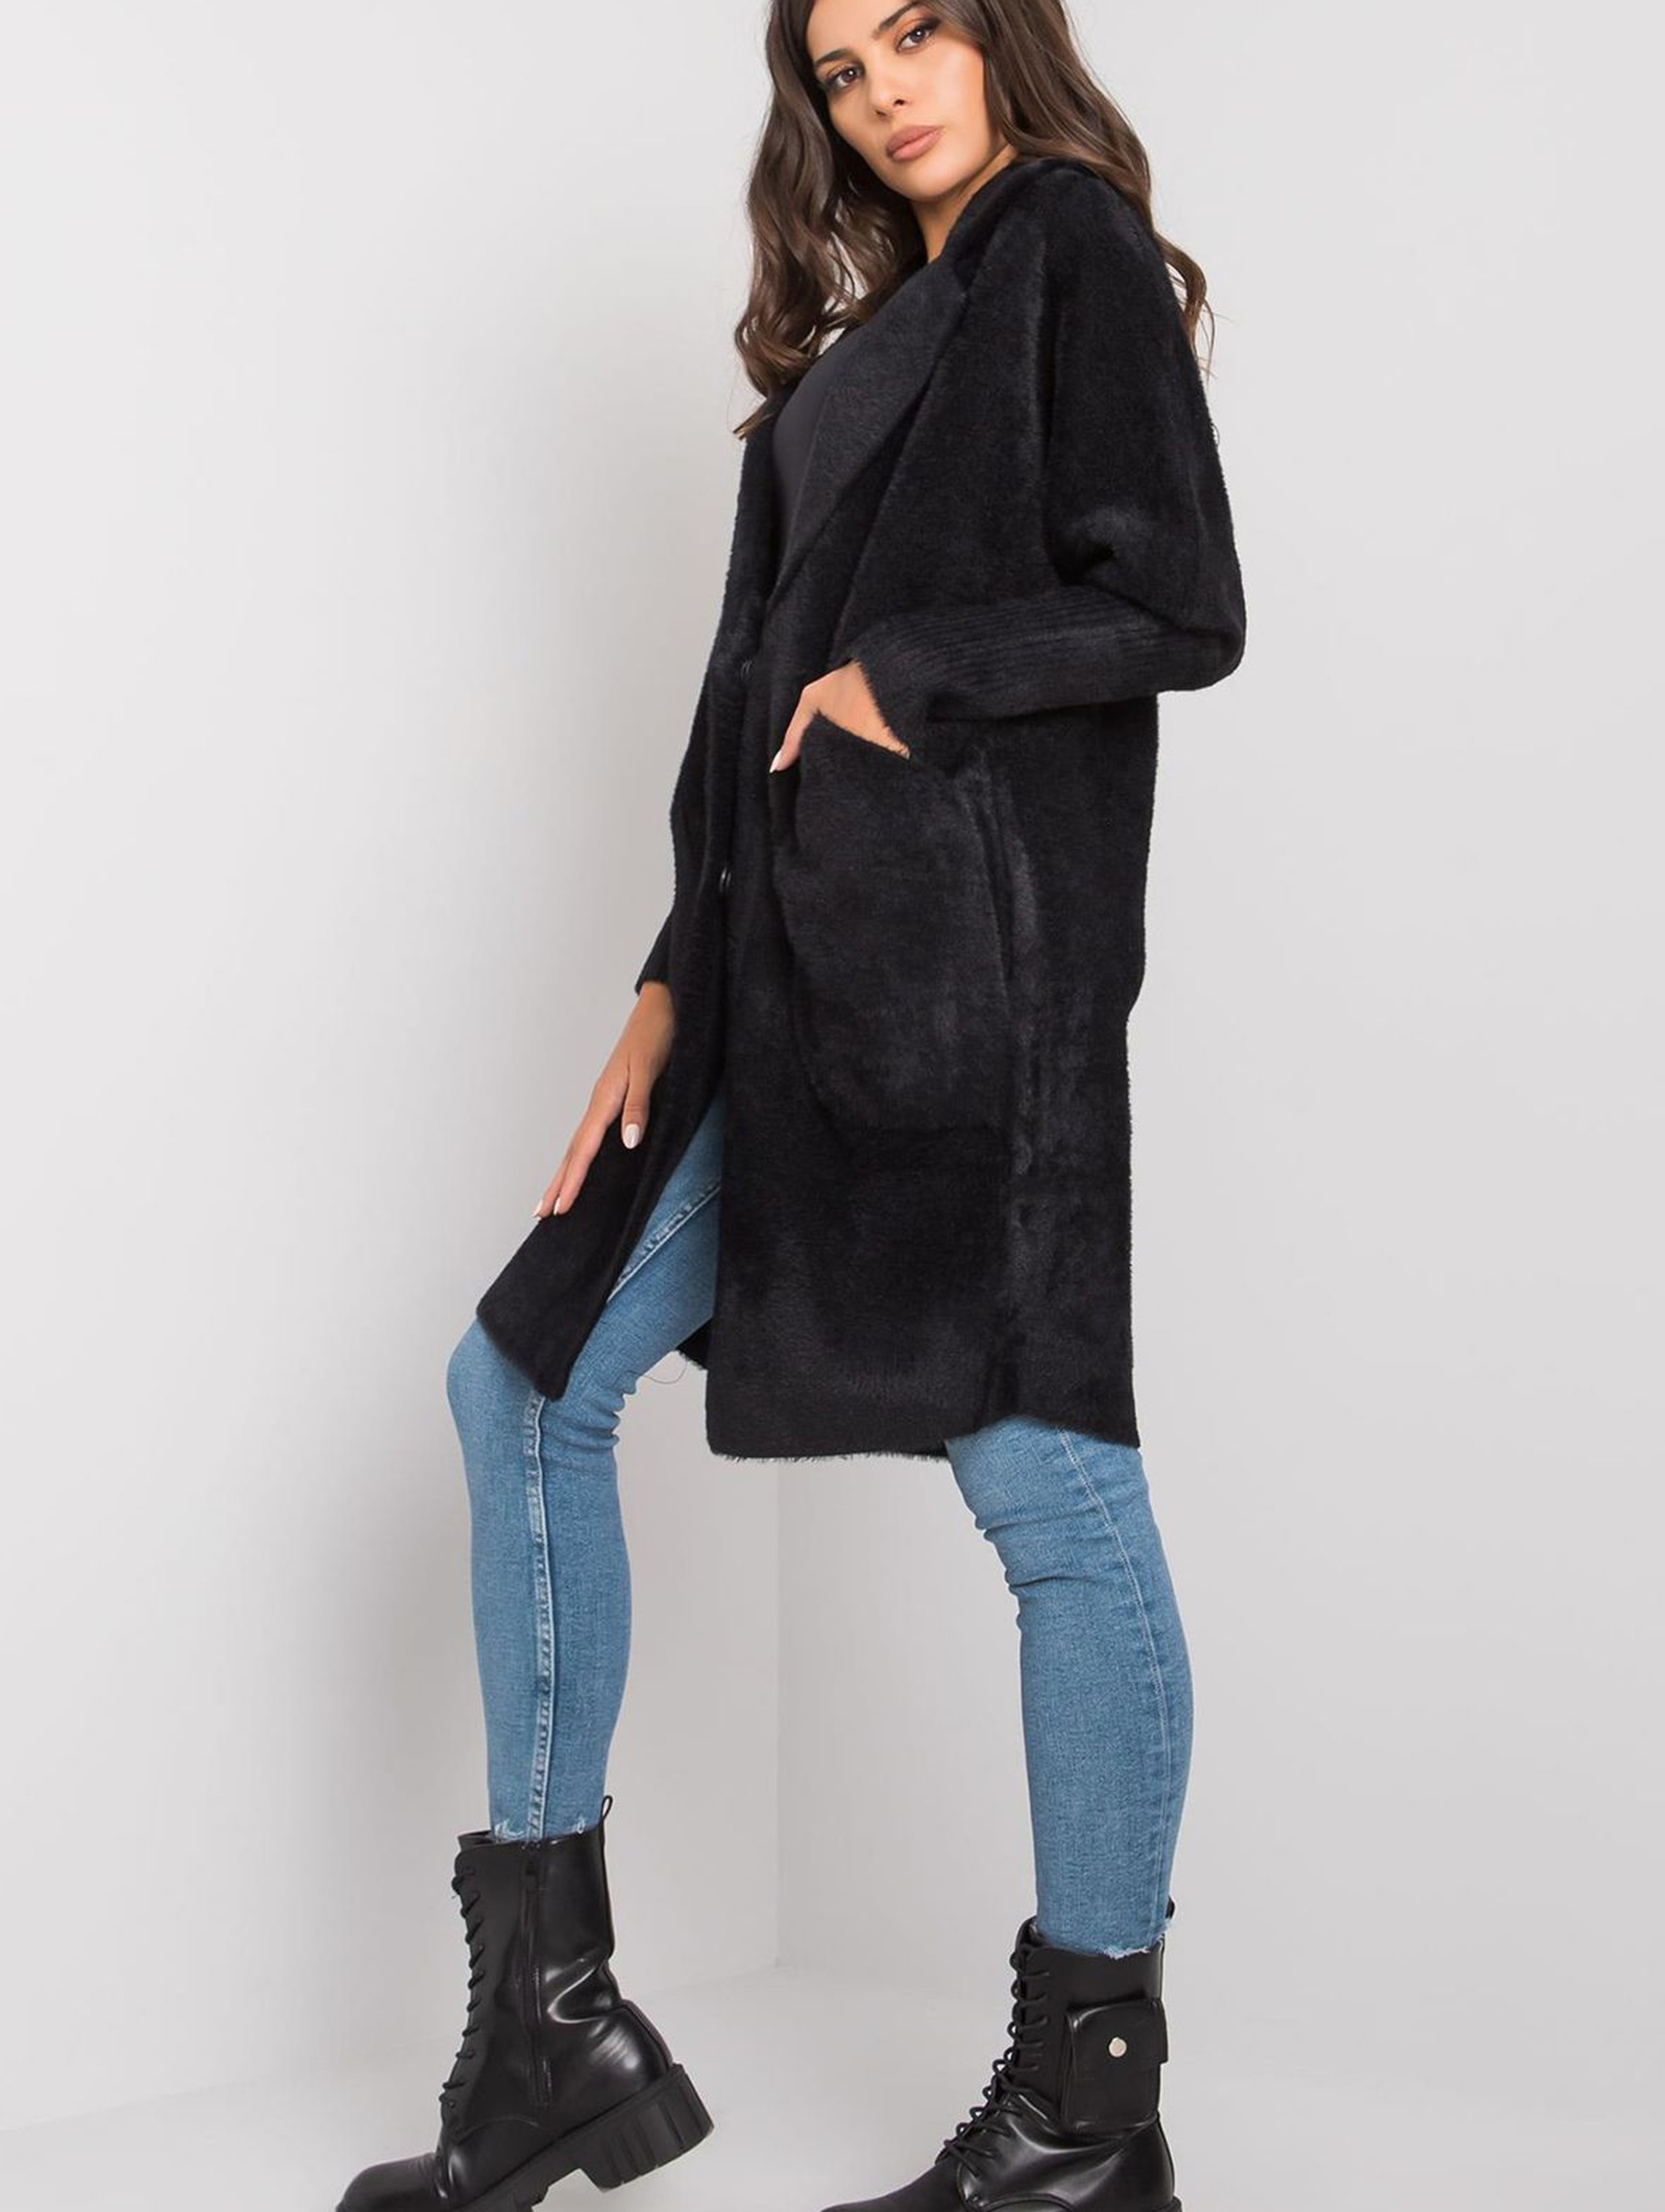 Czarny płaszcz alpaka z kieszeniami rozmiar S/M